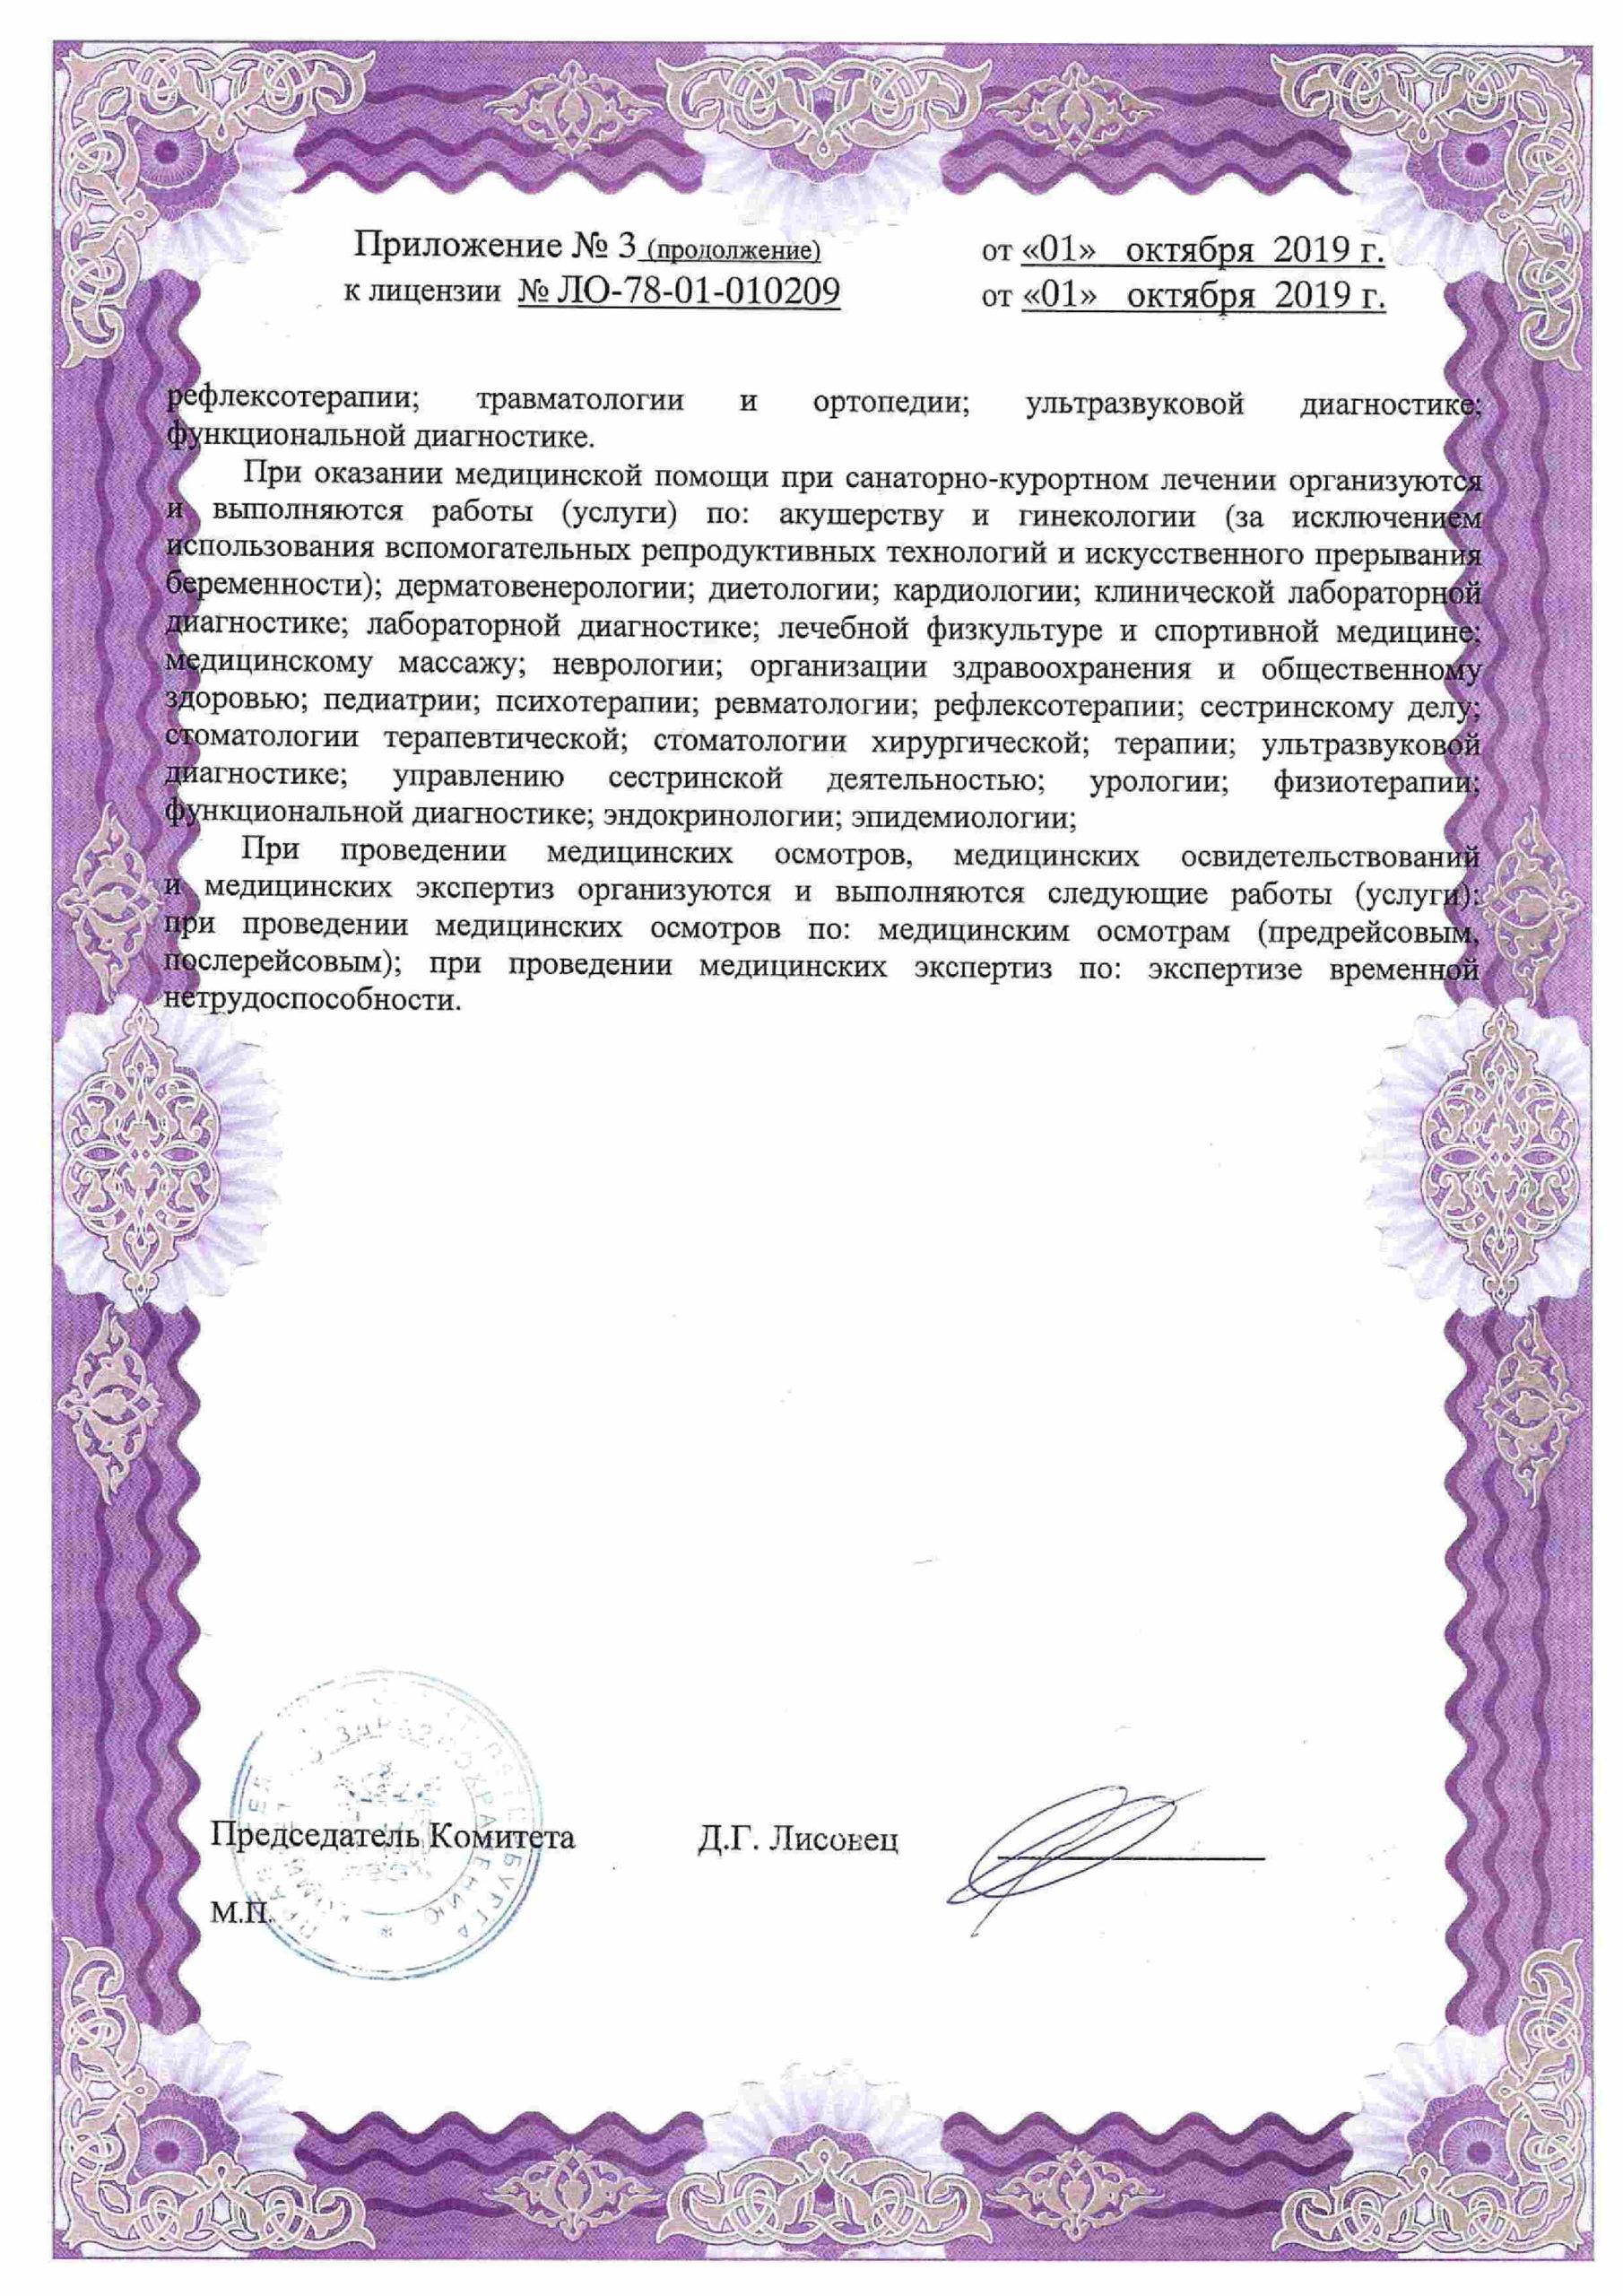 Международный медицинский центр СОГАЗ корпоратив лицензия №8